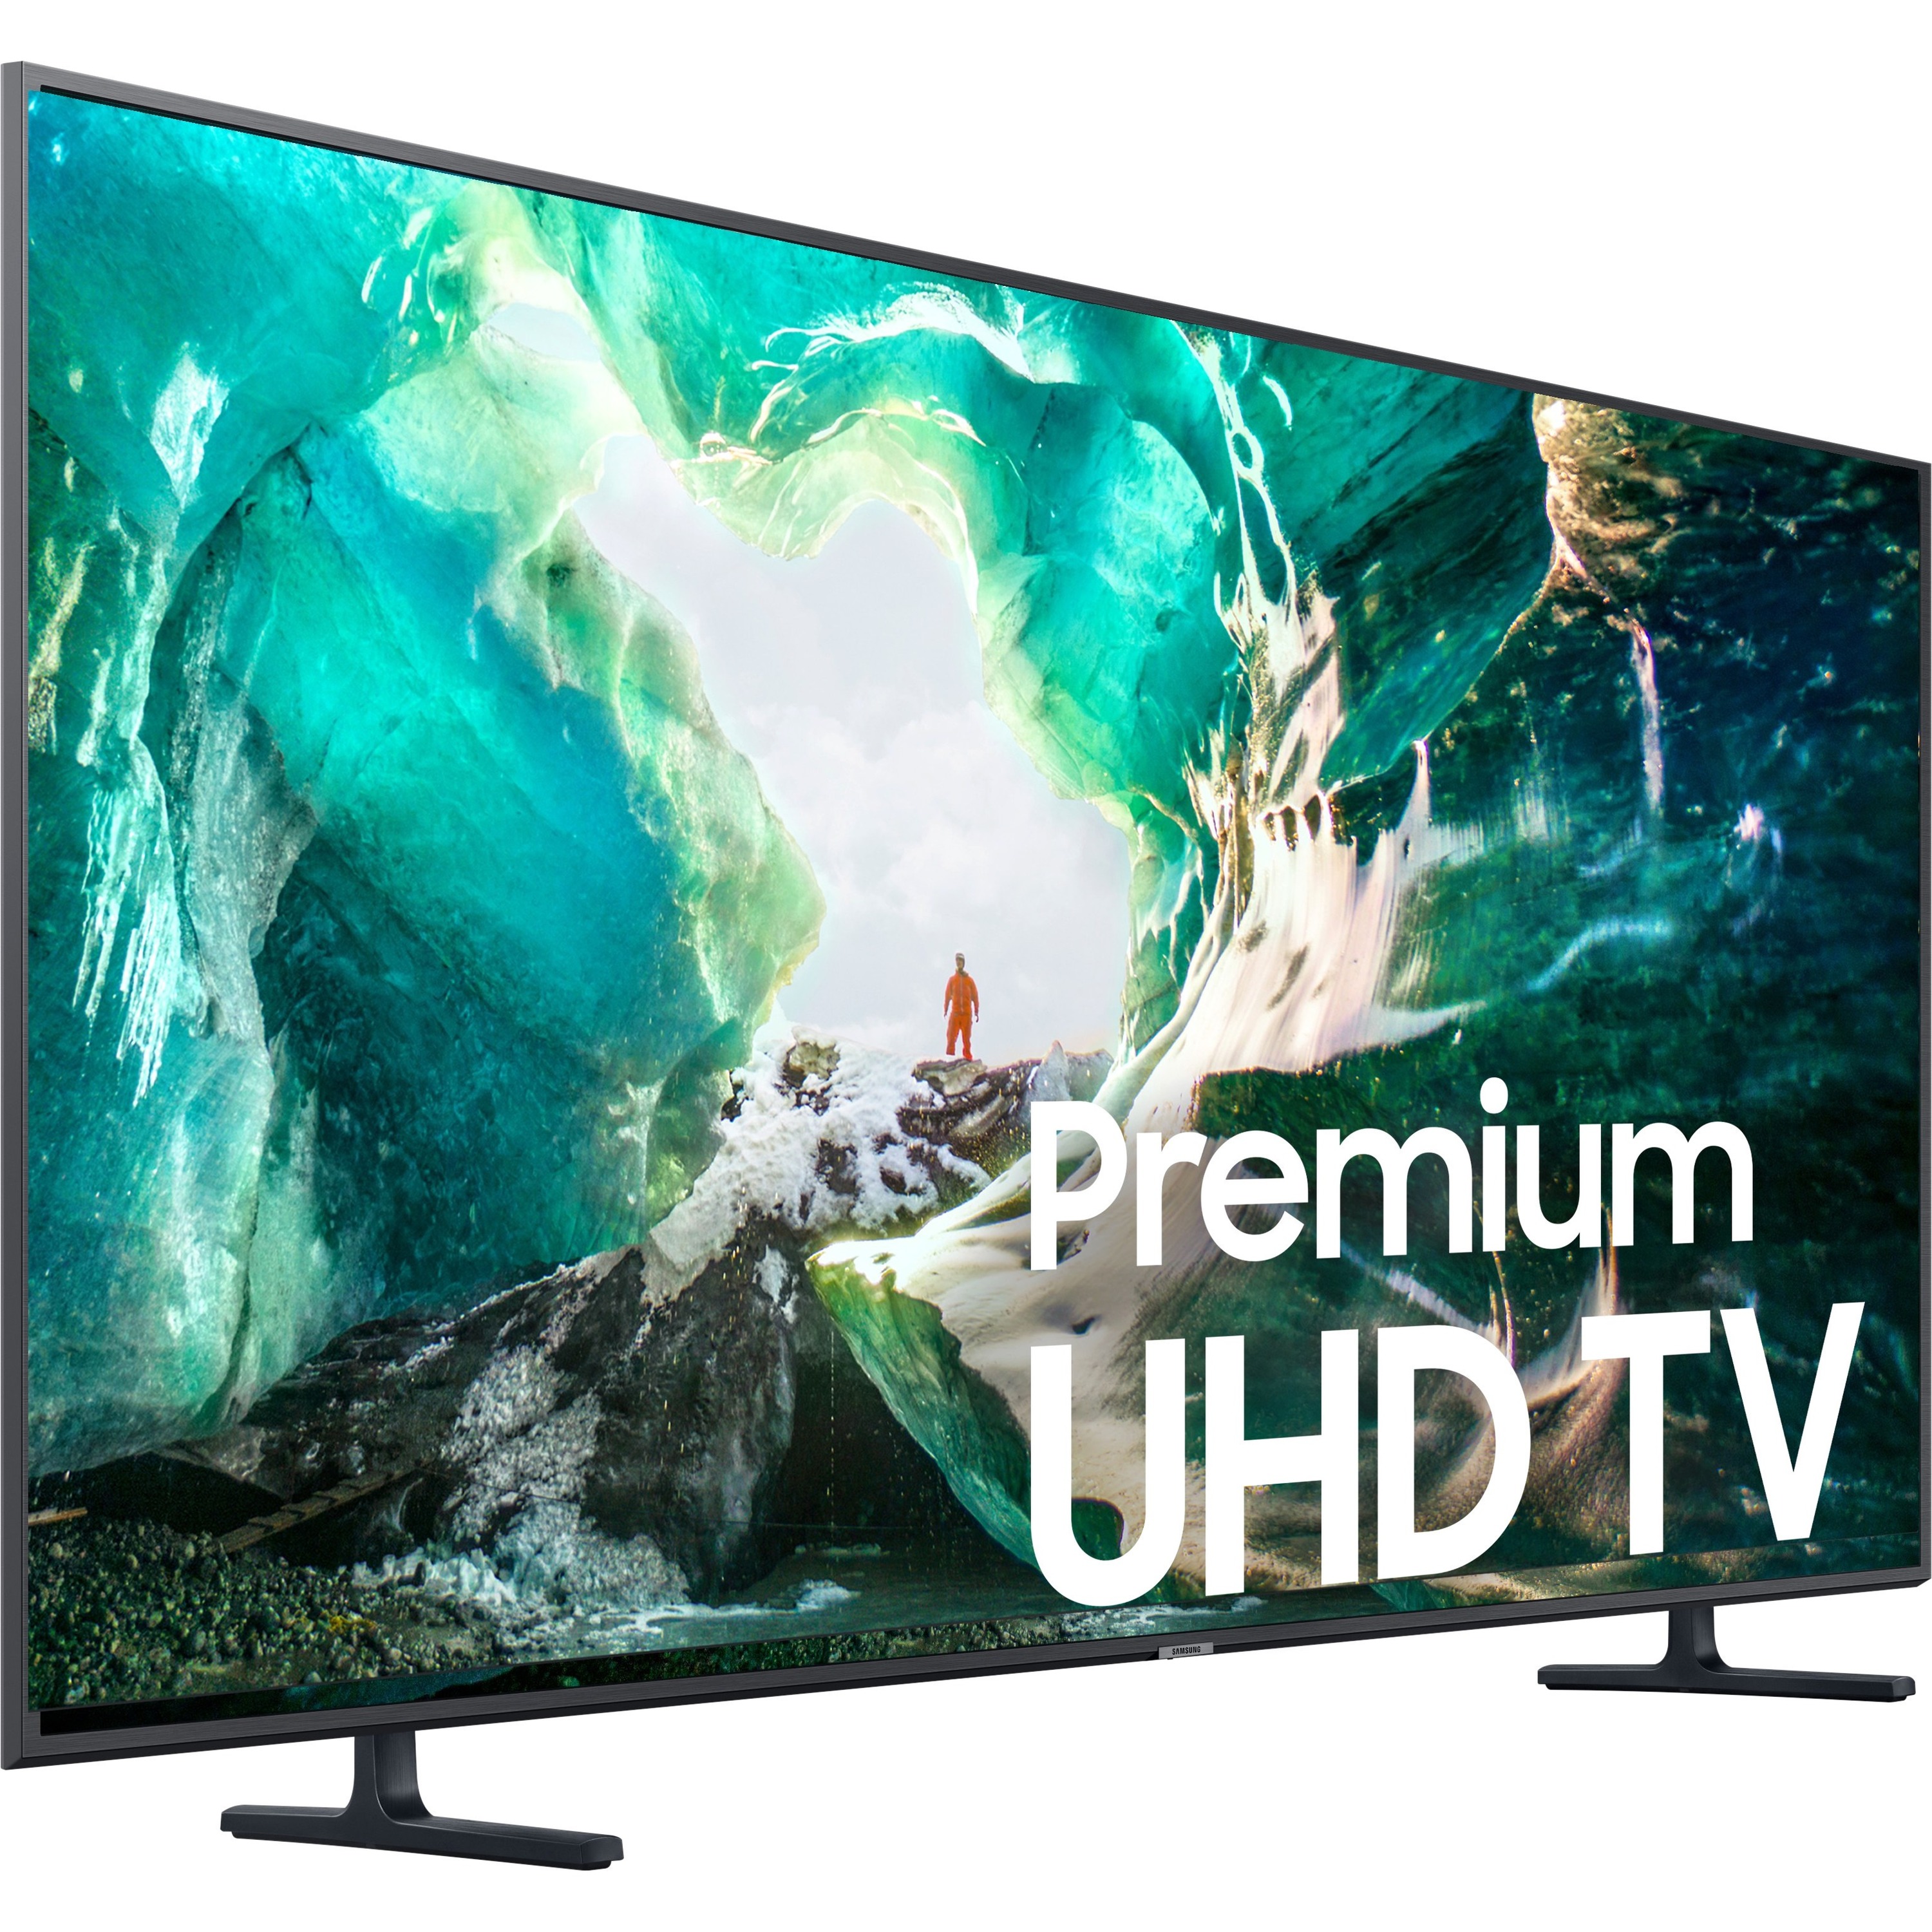 Samsung UN75RU8000F 75-inch 4K Ultra HD LED Smart TV UN75RU8000FXZA ...